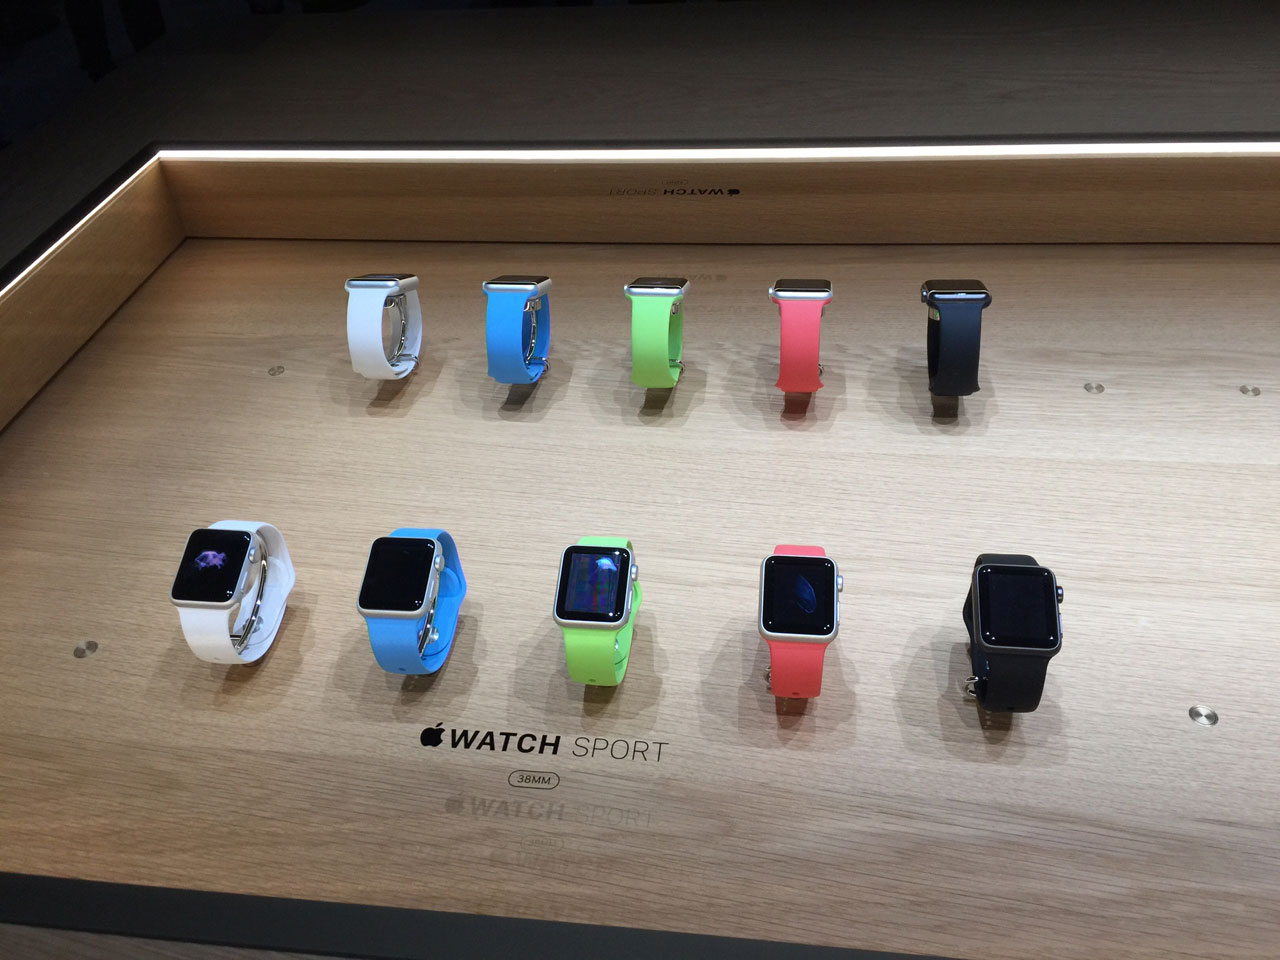 عرضه ساعت های اپل در رنگ های جدید به همراه iMac های جدید